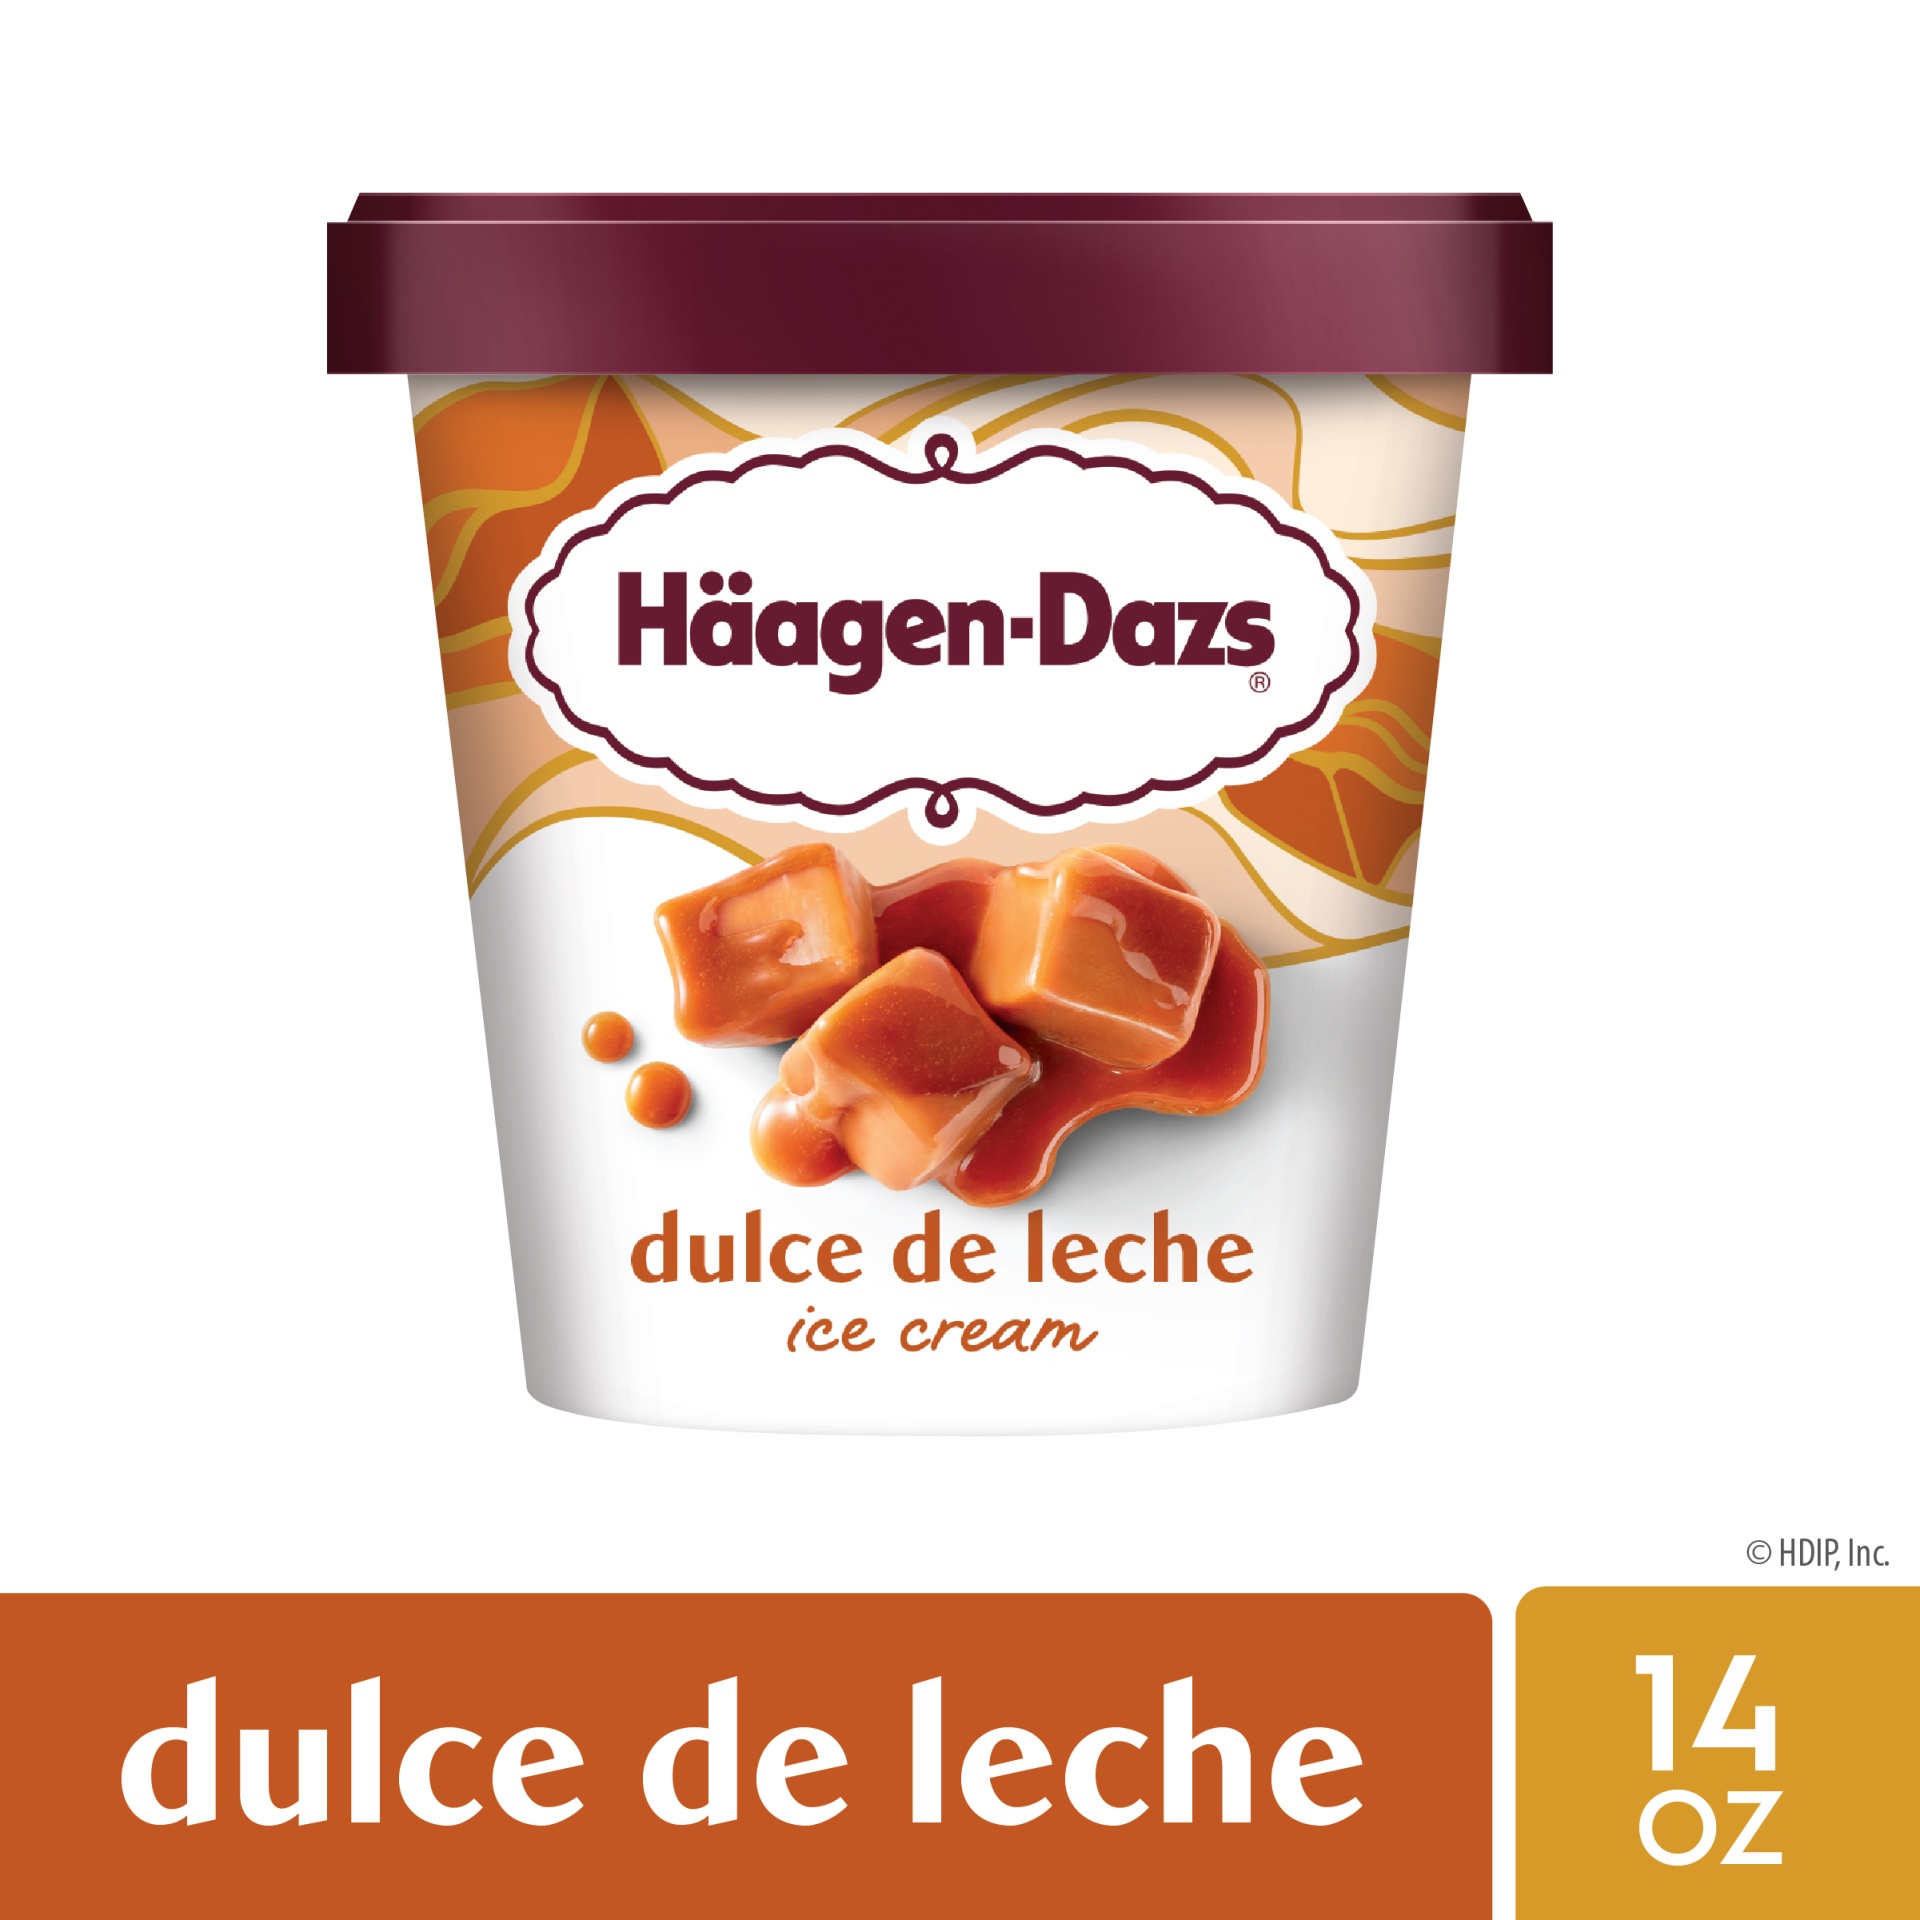 slide 1 of 6, Häagen-Dazs Haagen-Dazs Dulce de Leche Caramel Ice Cream - 14oz, 14 oz